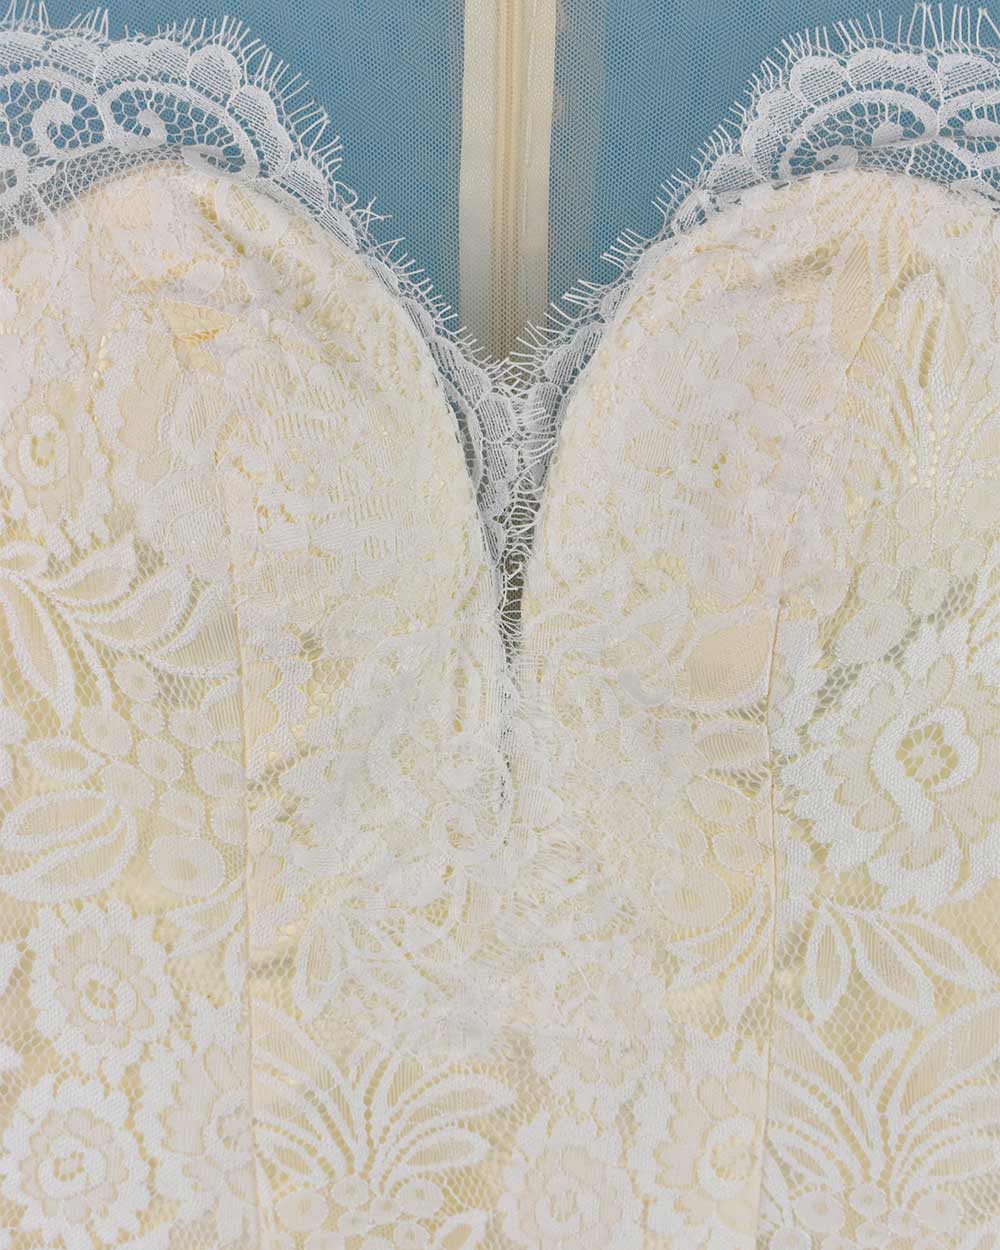 Ivory Lace Overlay Long Sleeved Wedding Dress